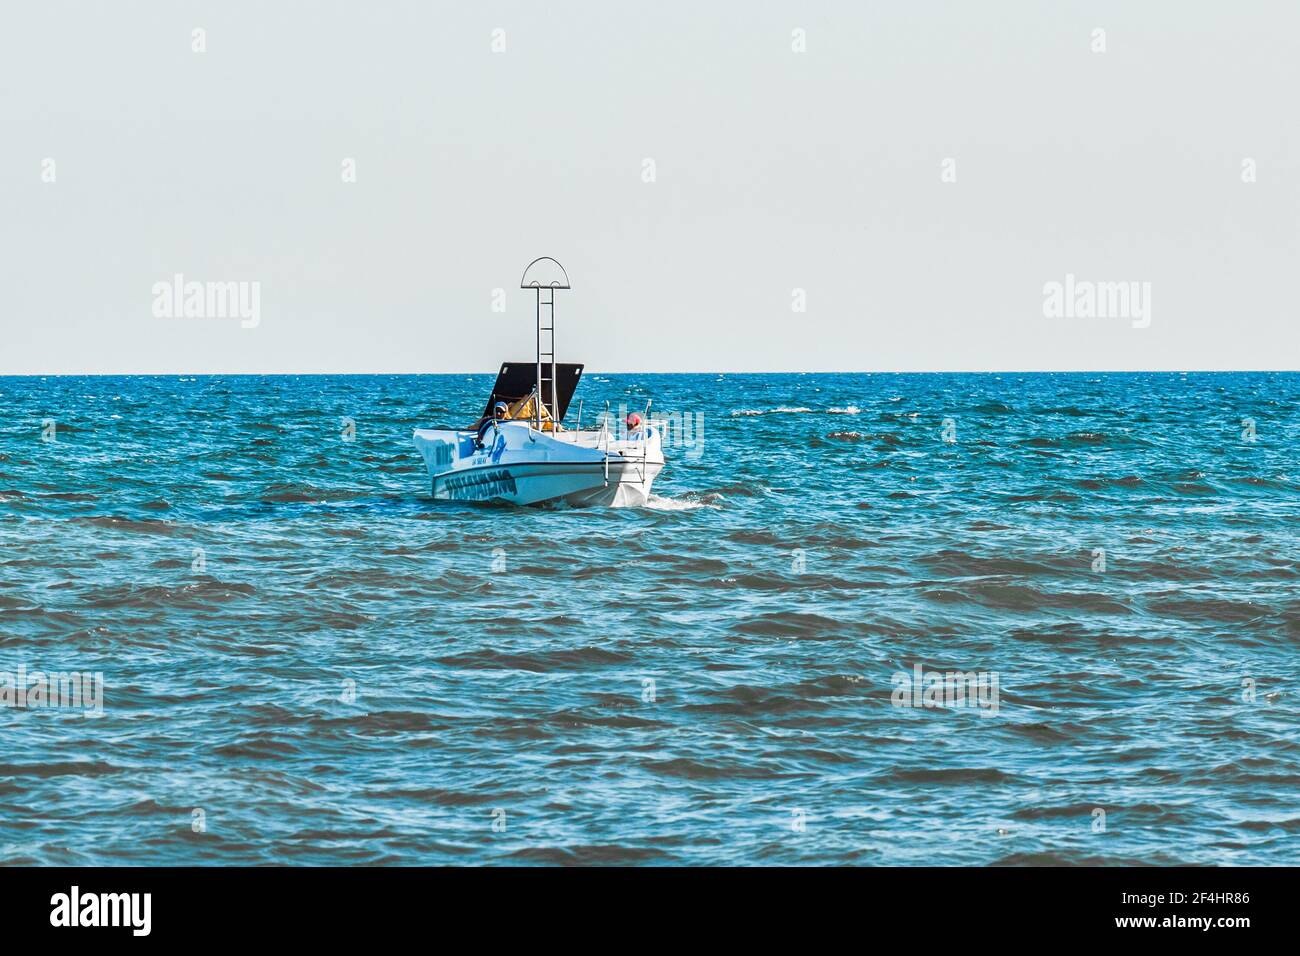 Ucraina, Porto di ferro - 23 agosto 2020: Una barca con attrezzatura speciale per lanciare paracadutisti sullo sfondo del mare. Foto Stock